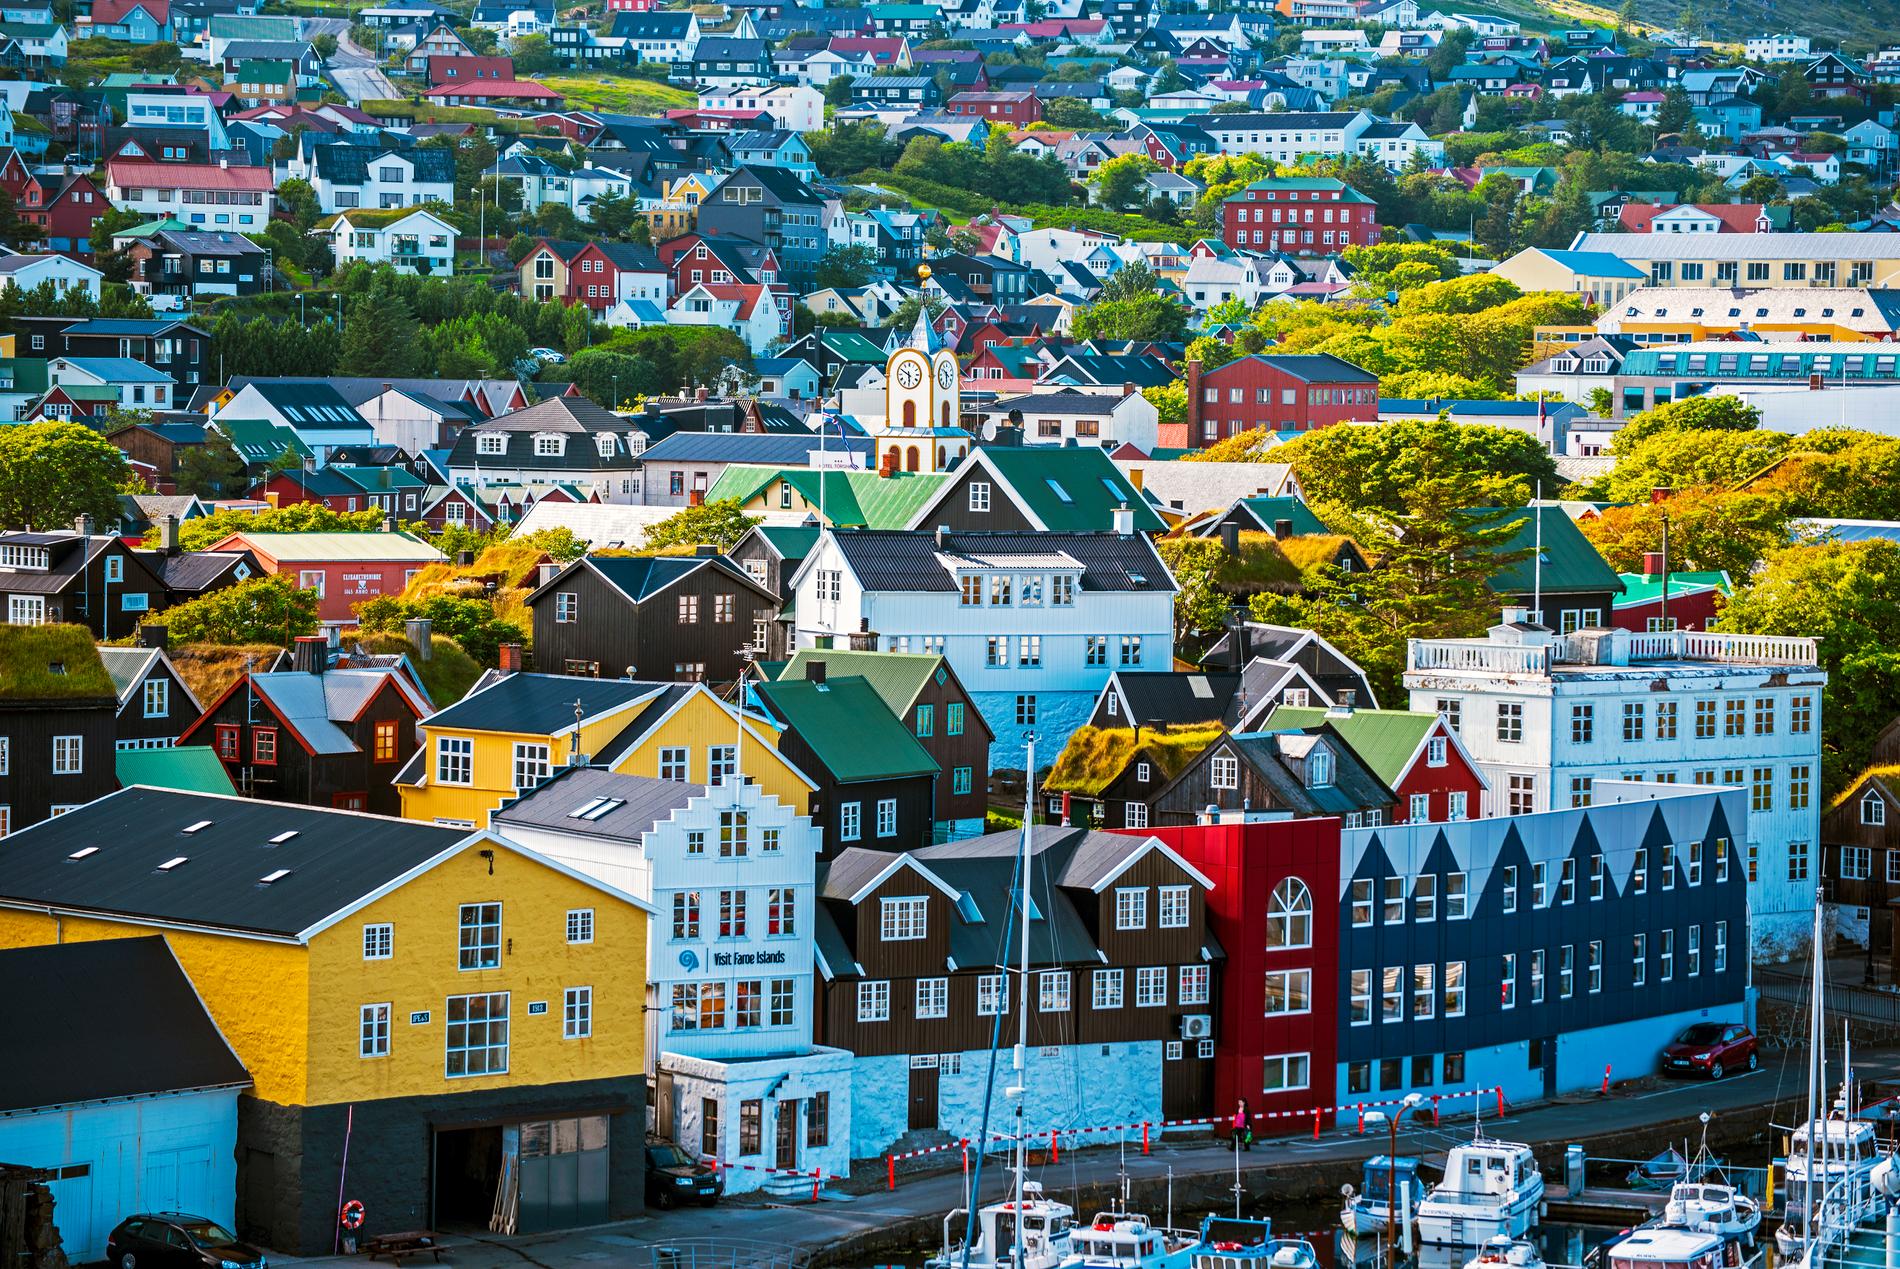 Många av husen i Tórshavn har tak täckta av gräs. 